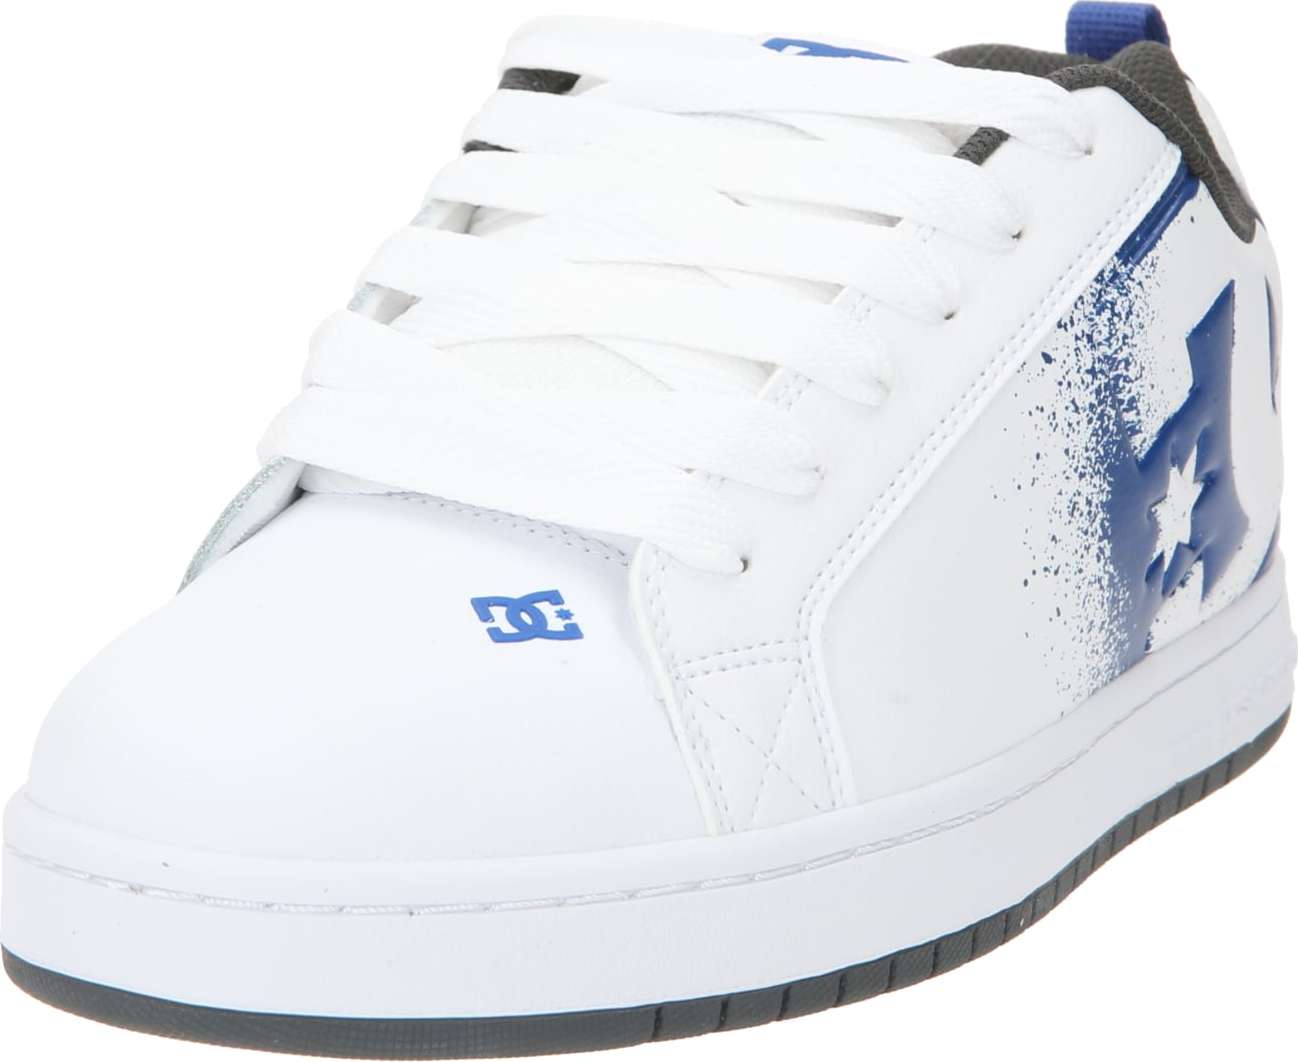 Tenisky 'COURT GRAFFIK' DC Shoes námořnická modř / tmavě šedá / bílá